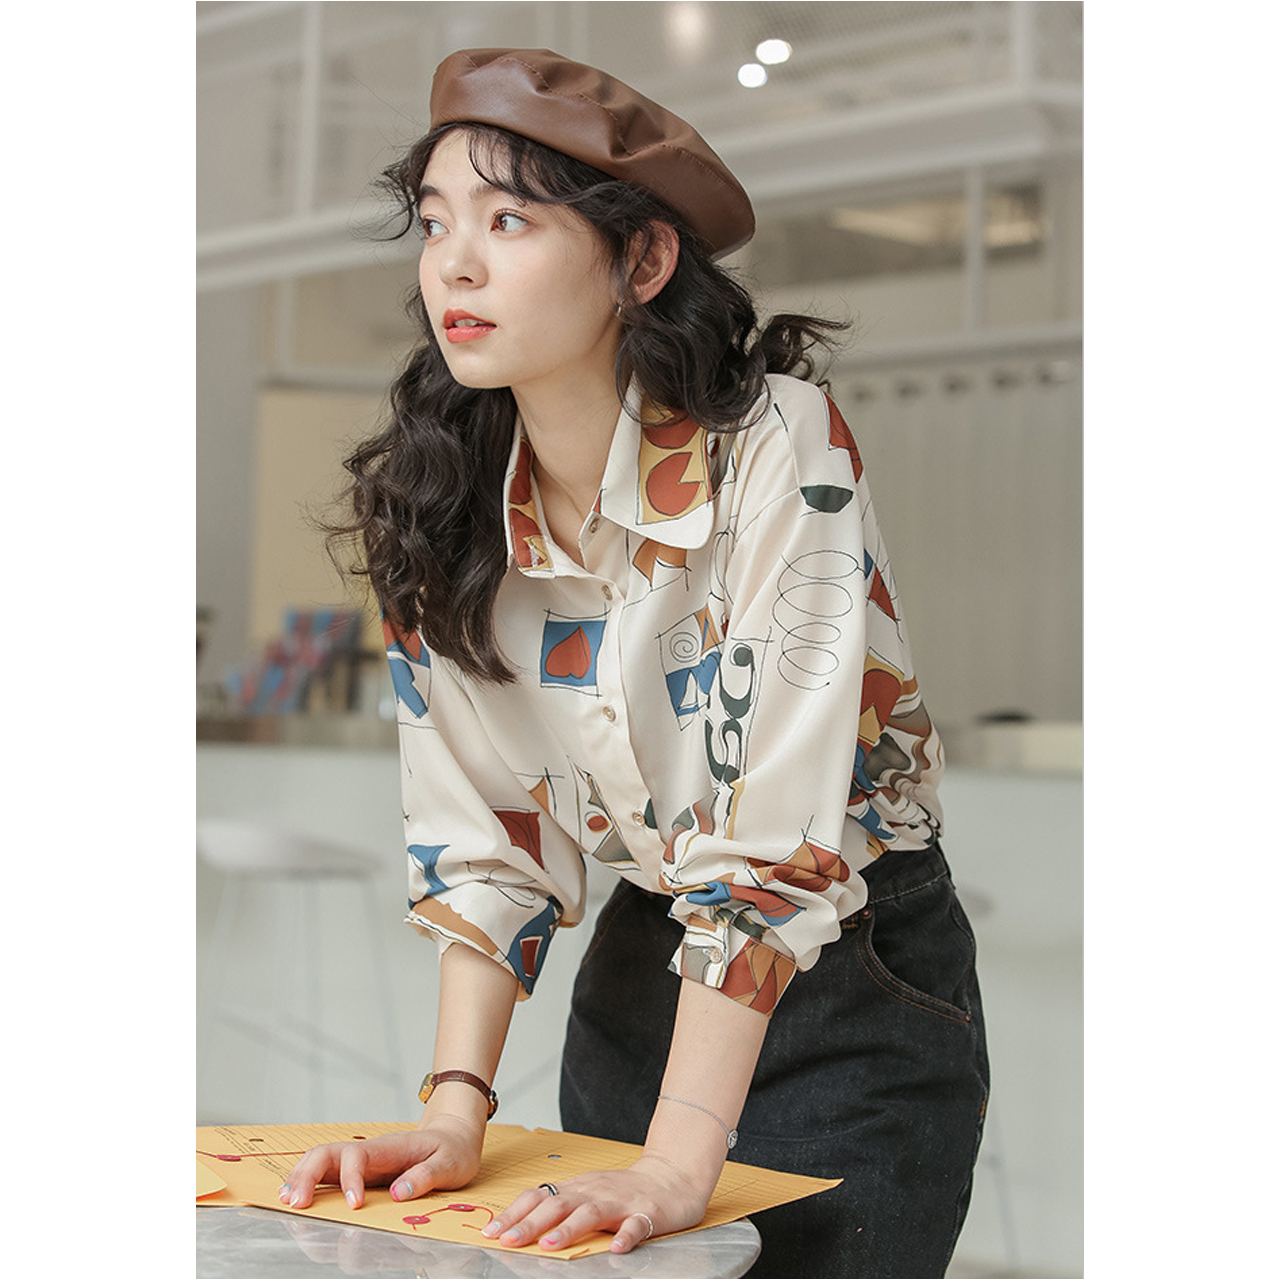 Regit 即納 Figure Plane Shirts 韓国ファッション 韓国服 かわいいブラウス おしゃれなブラウス プチプラコーデ おしゃれ かわいい Regit